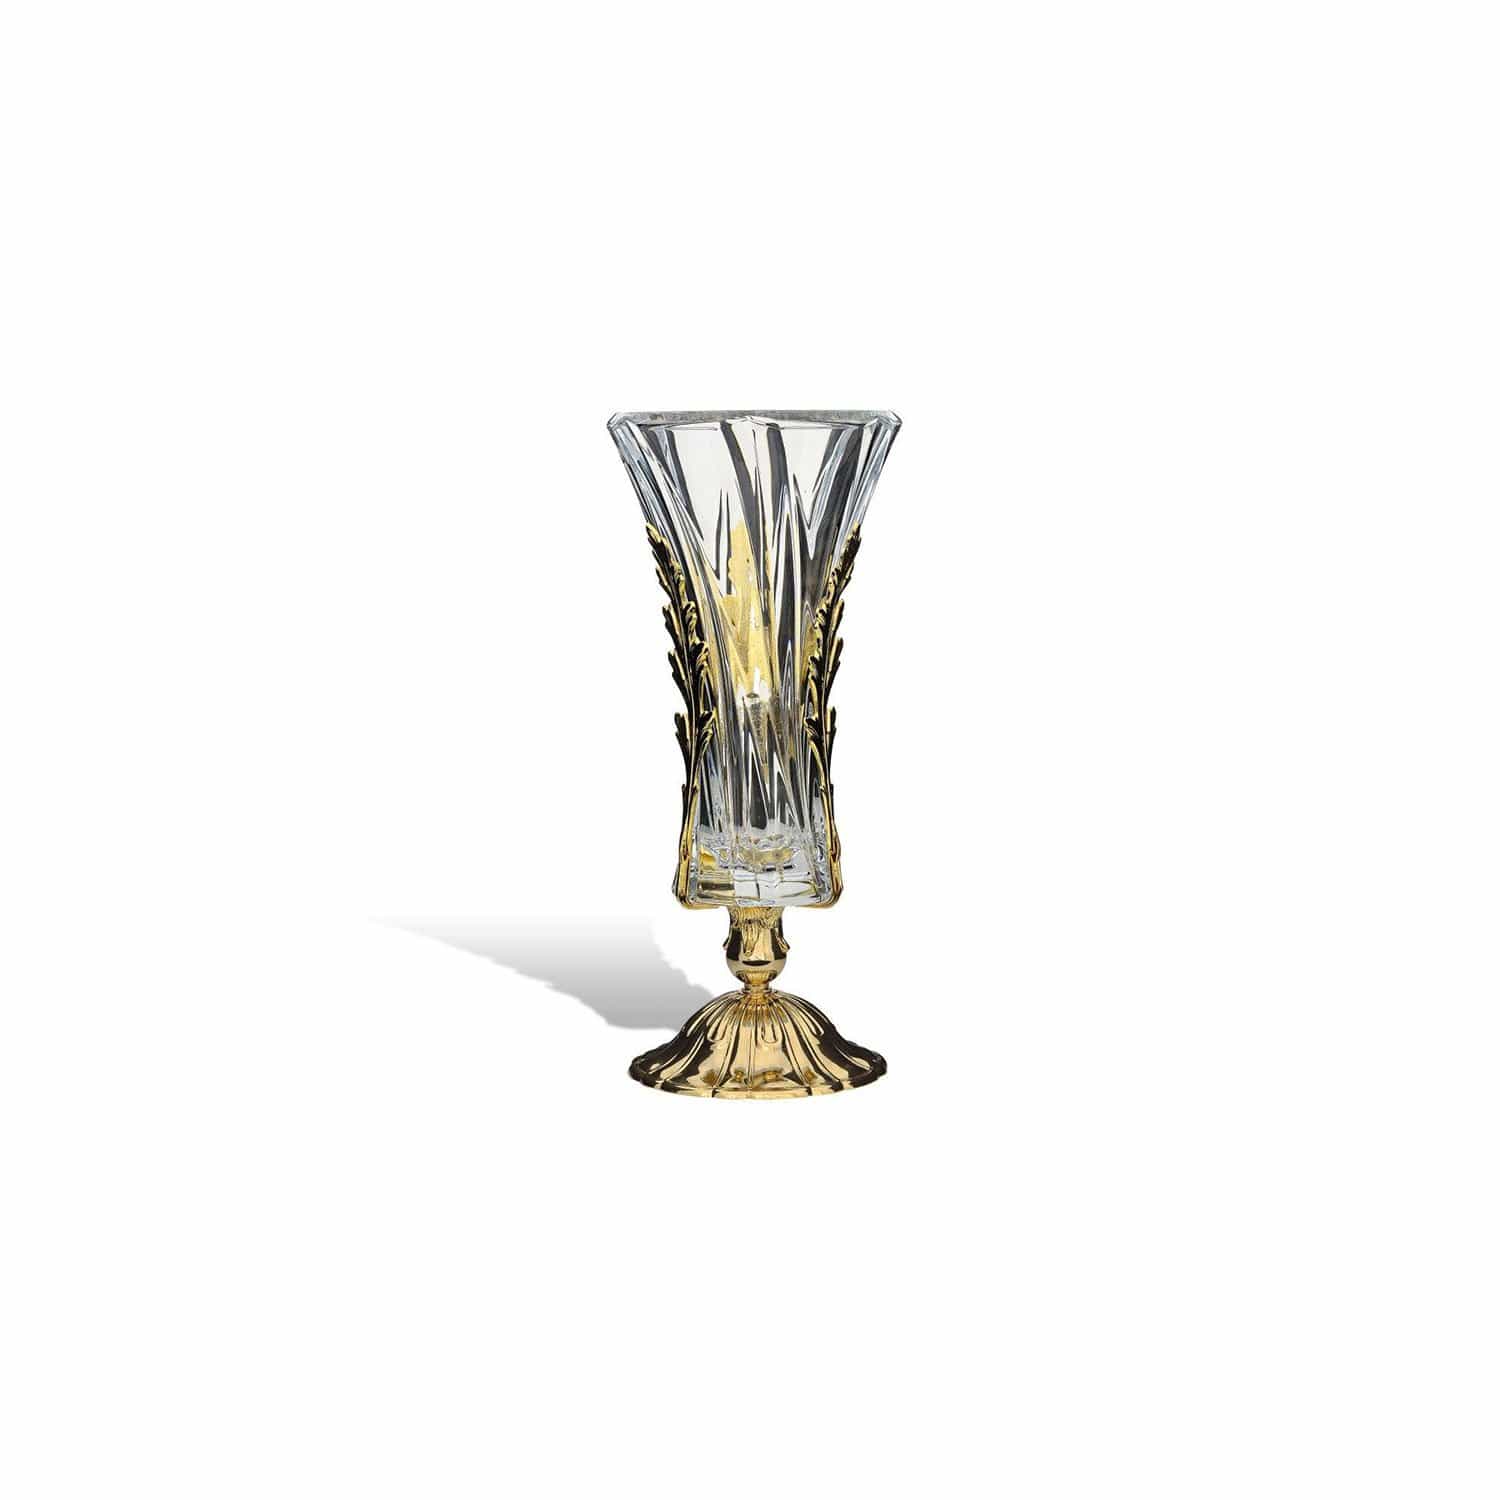 مزهرية دبي قاعدة معدنية من الزجاج الشفاف والذهب مع أوراق الشجر - DC3203